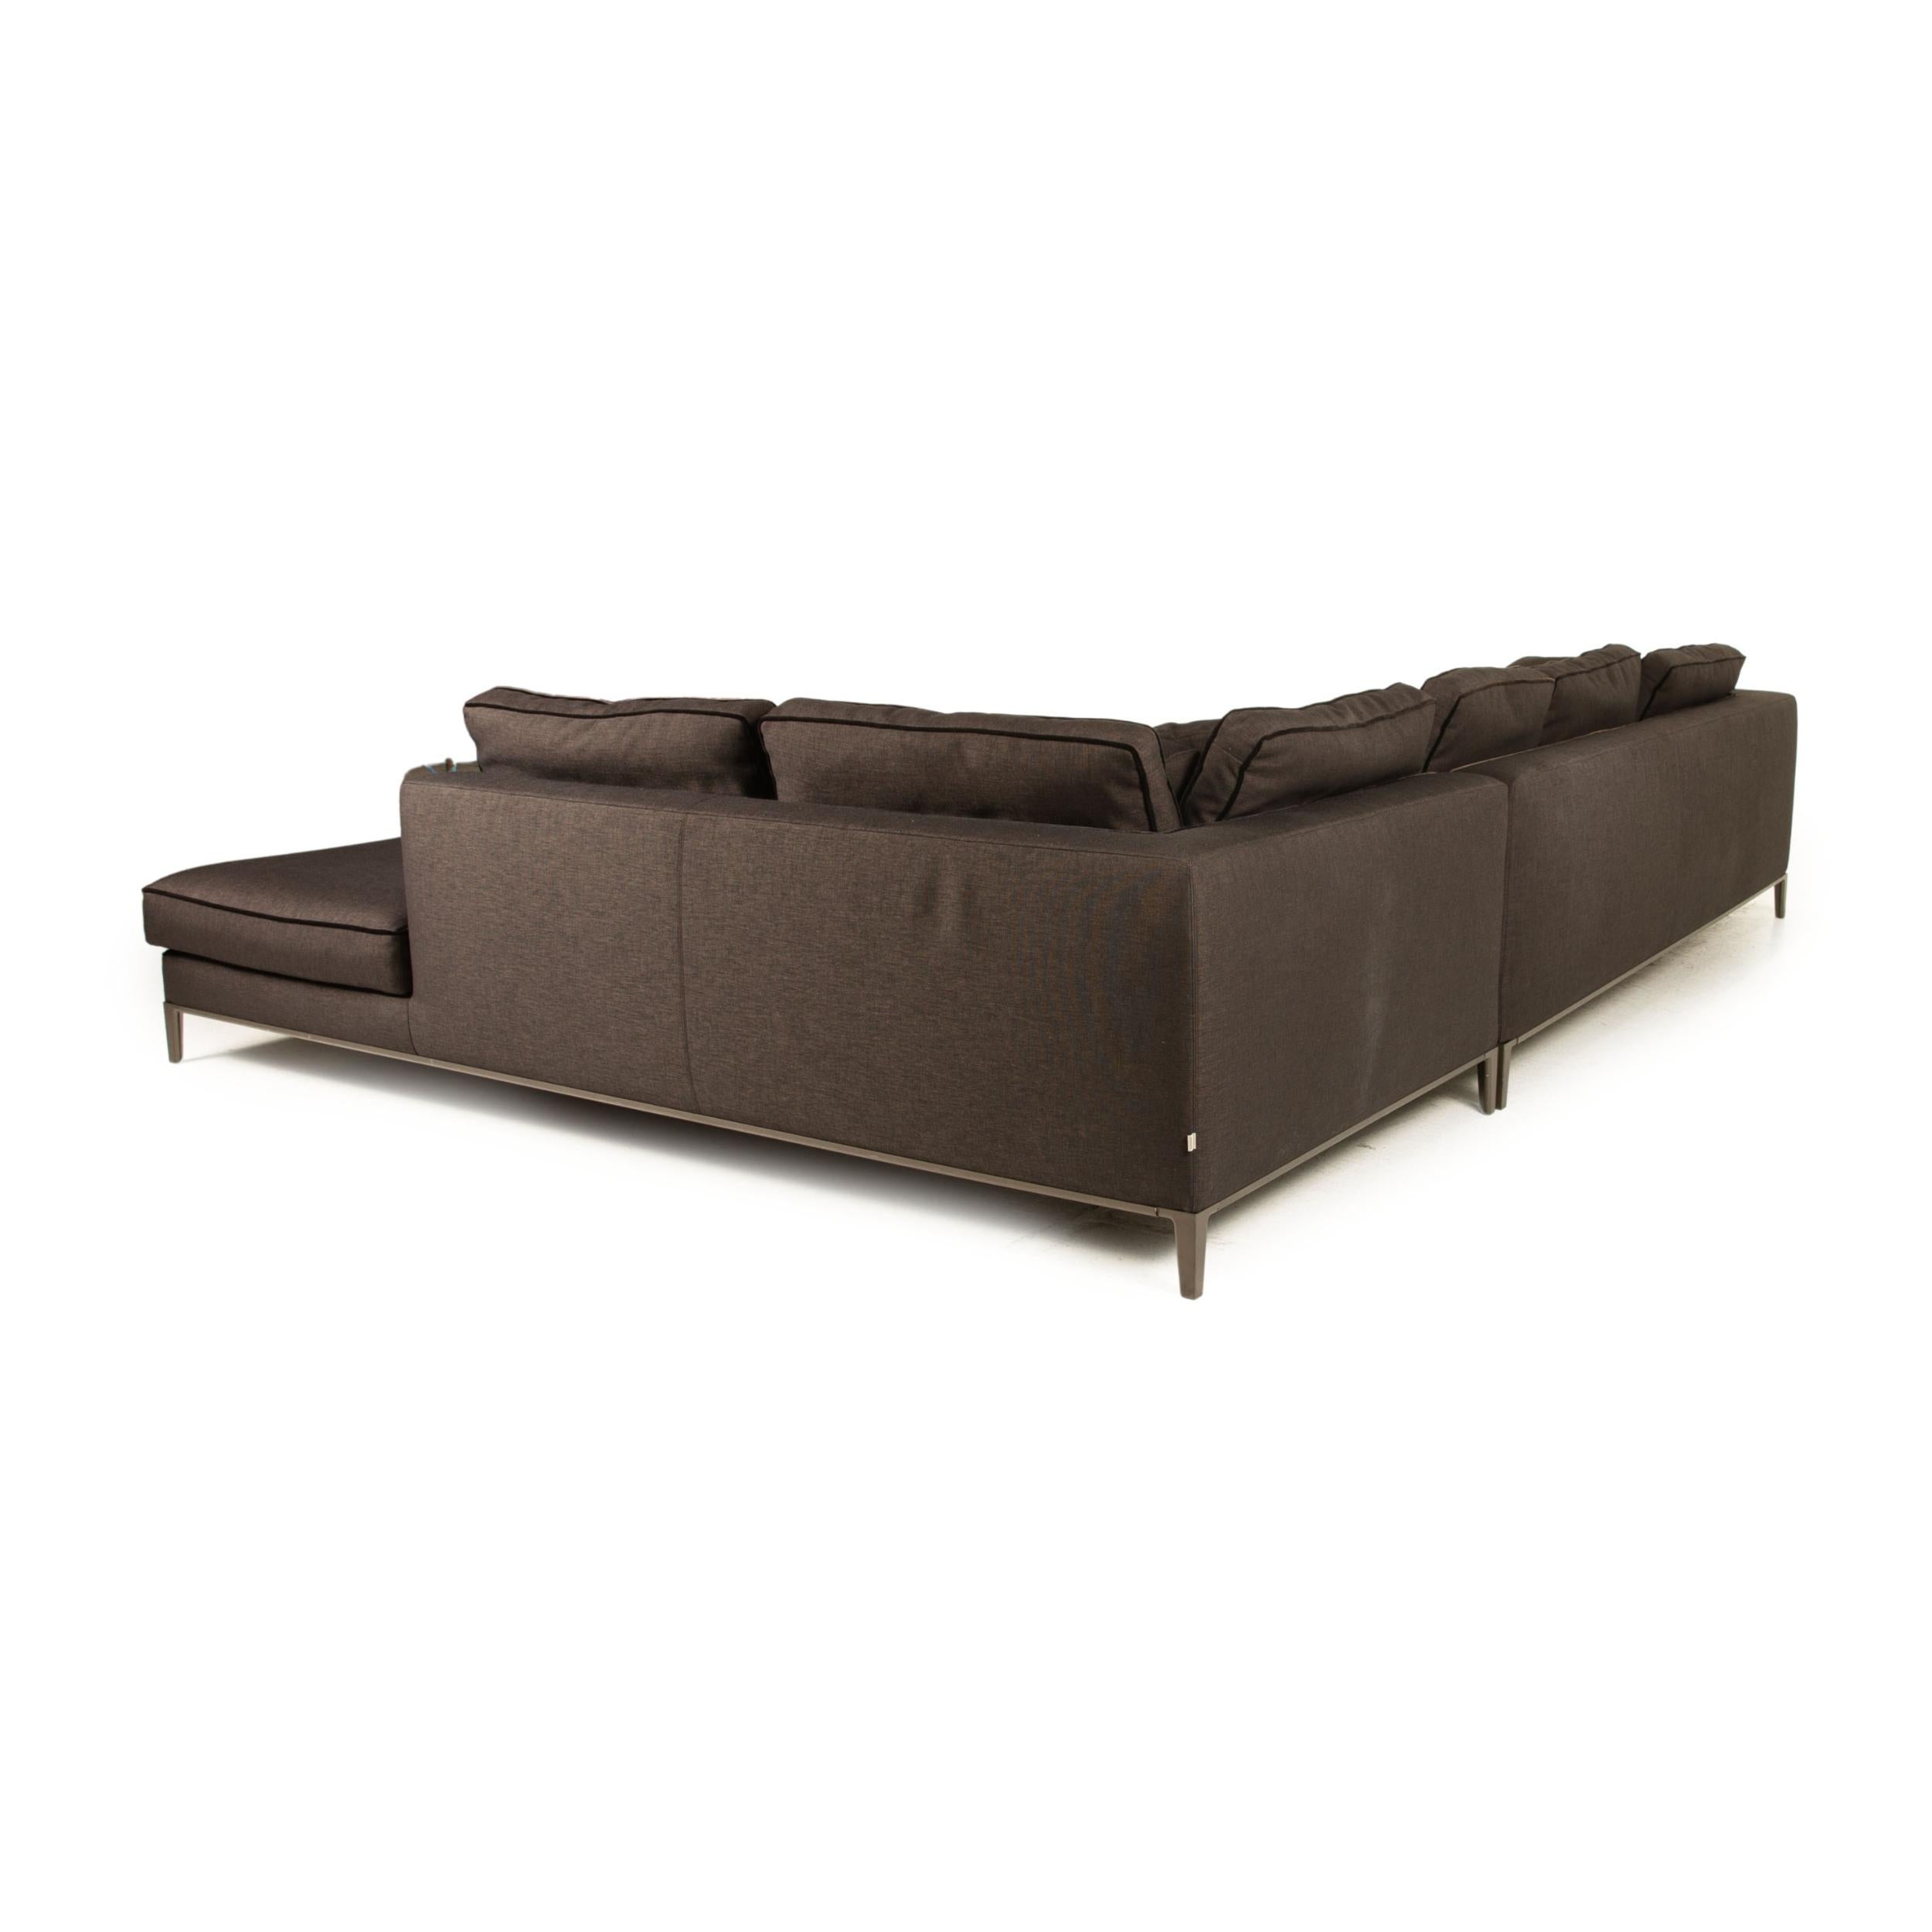 Maxalto Lucrezia Fabric Sofa Gray Corner Sofa Couch In Good Condition For Sale In Cologne, DE